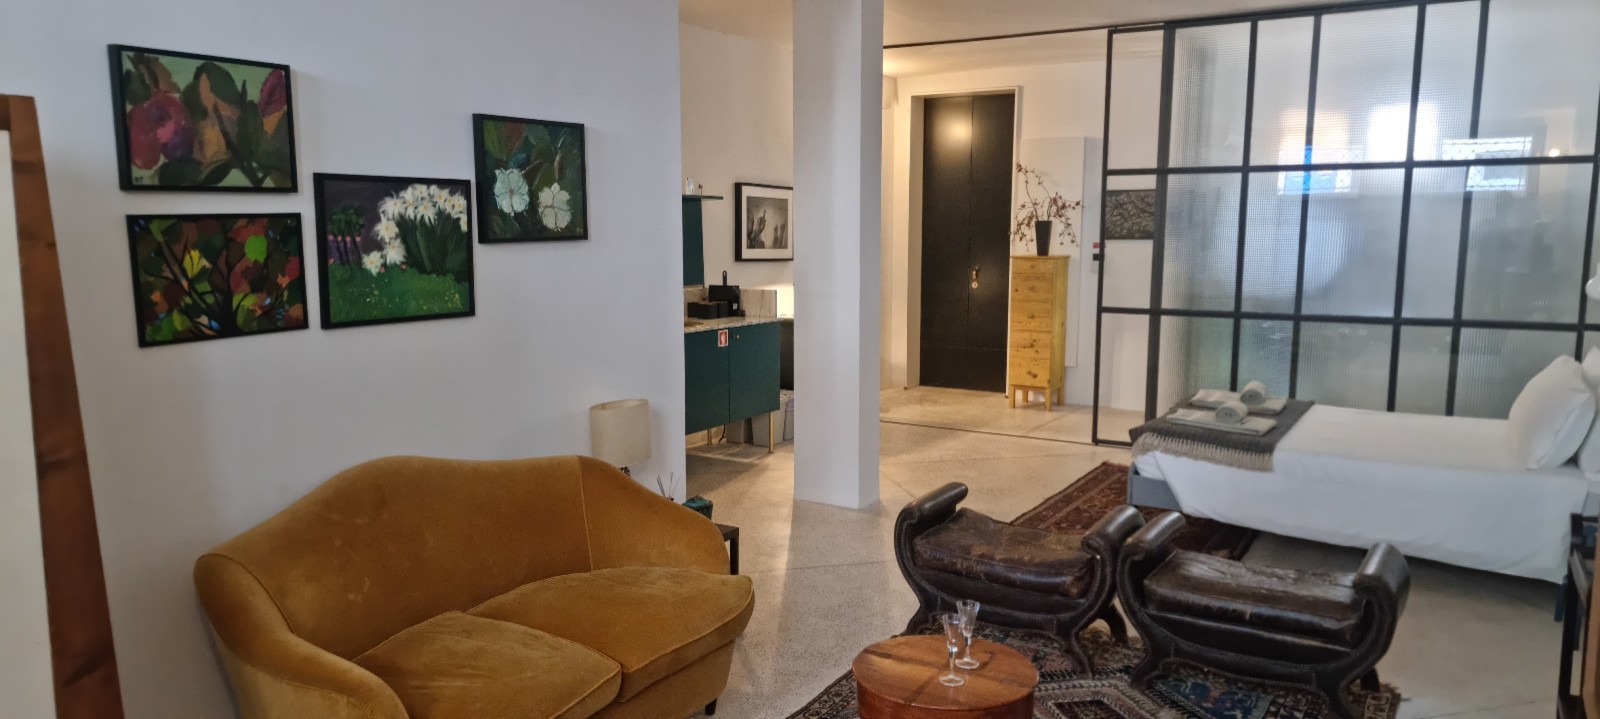 New flat for sale in Álvares Cabral, Porto, Portugal_272956